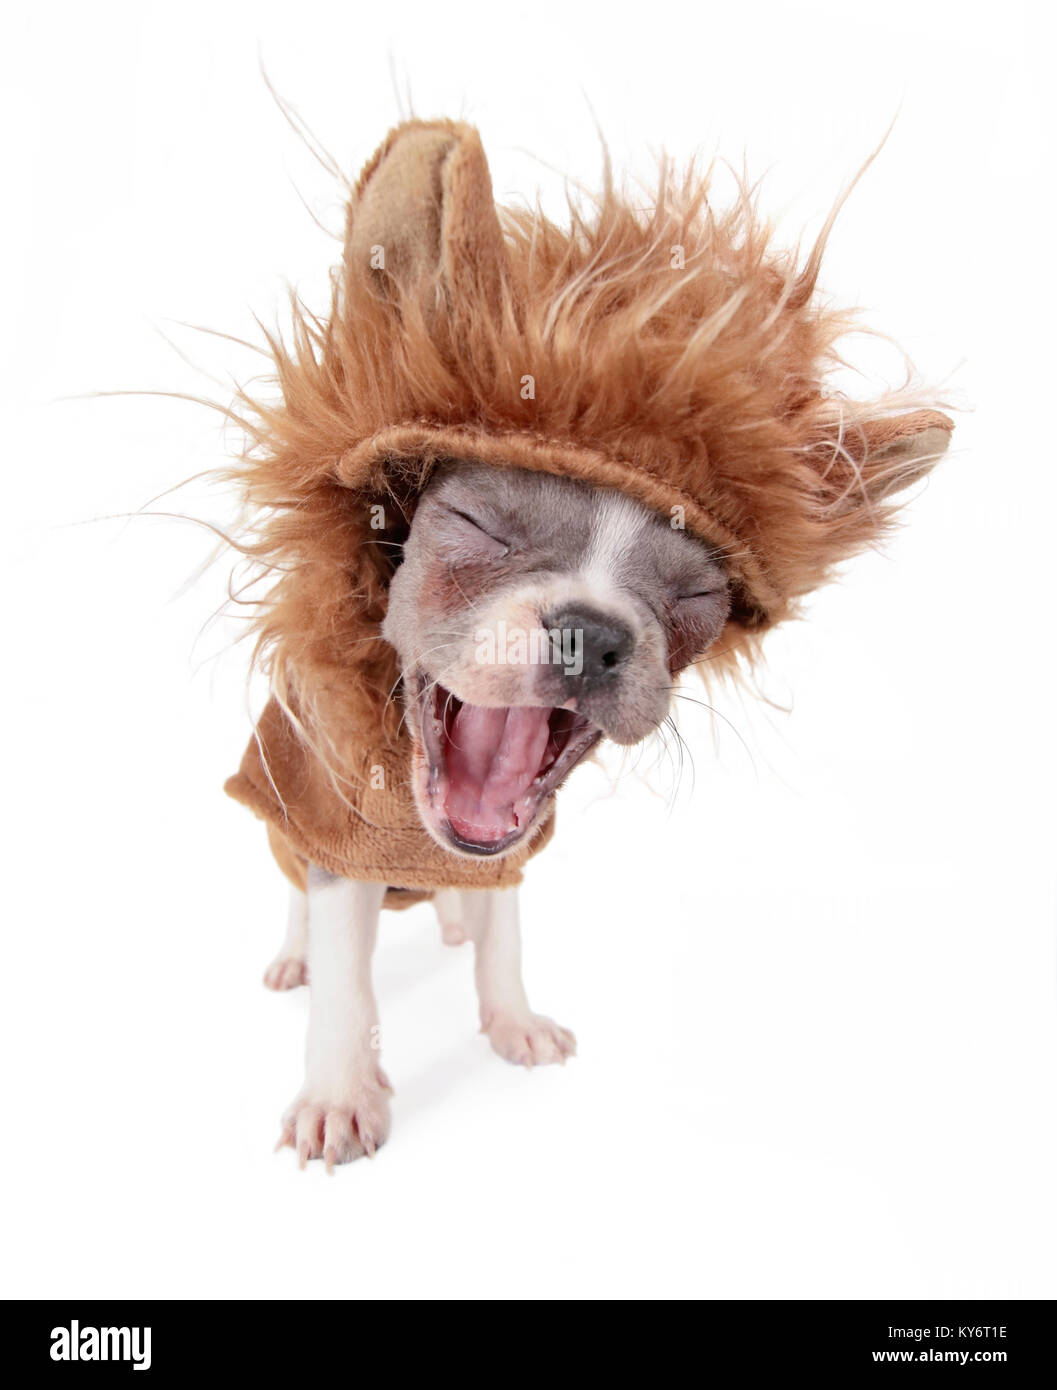 Foto de un lindo cachorro bulldog francés en un traje de león bostezar o ladridos de foto de estudio sobre un fondo blanco aislado Foto de stock